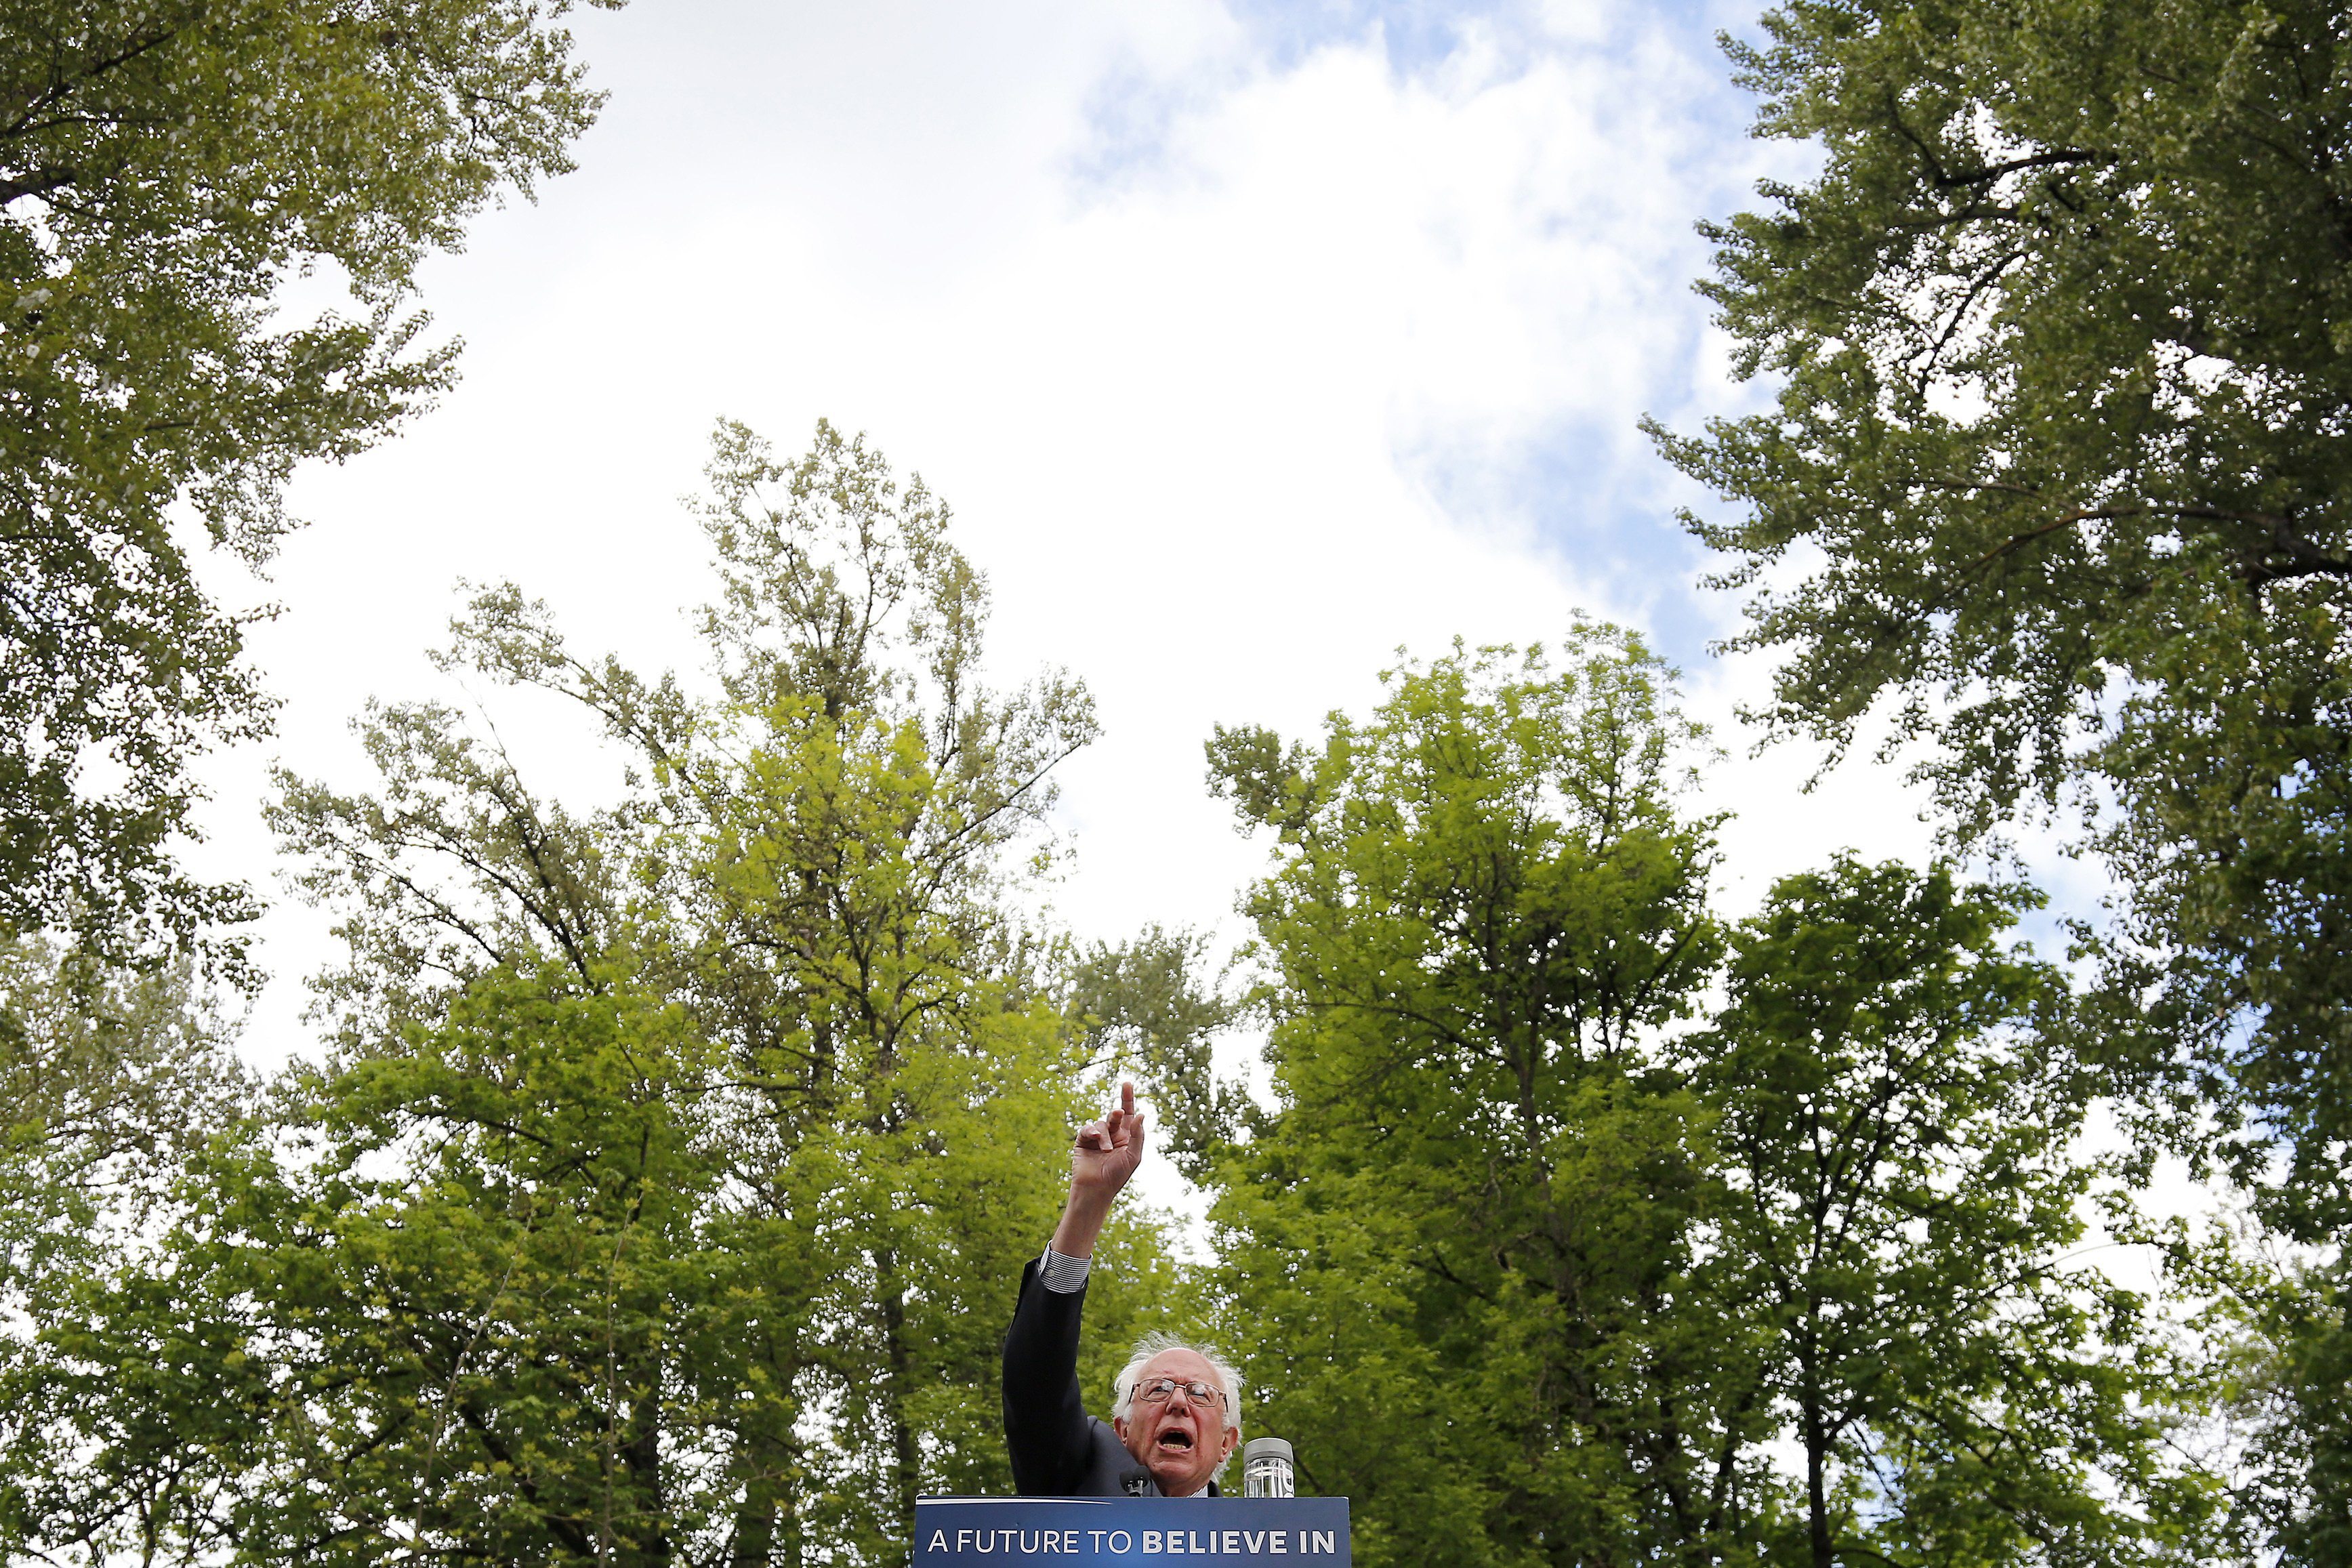 Bernie Sanders speaks during a rally in Springfield, Ore., on April 28, 2016. (Ryan Kang—AP)